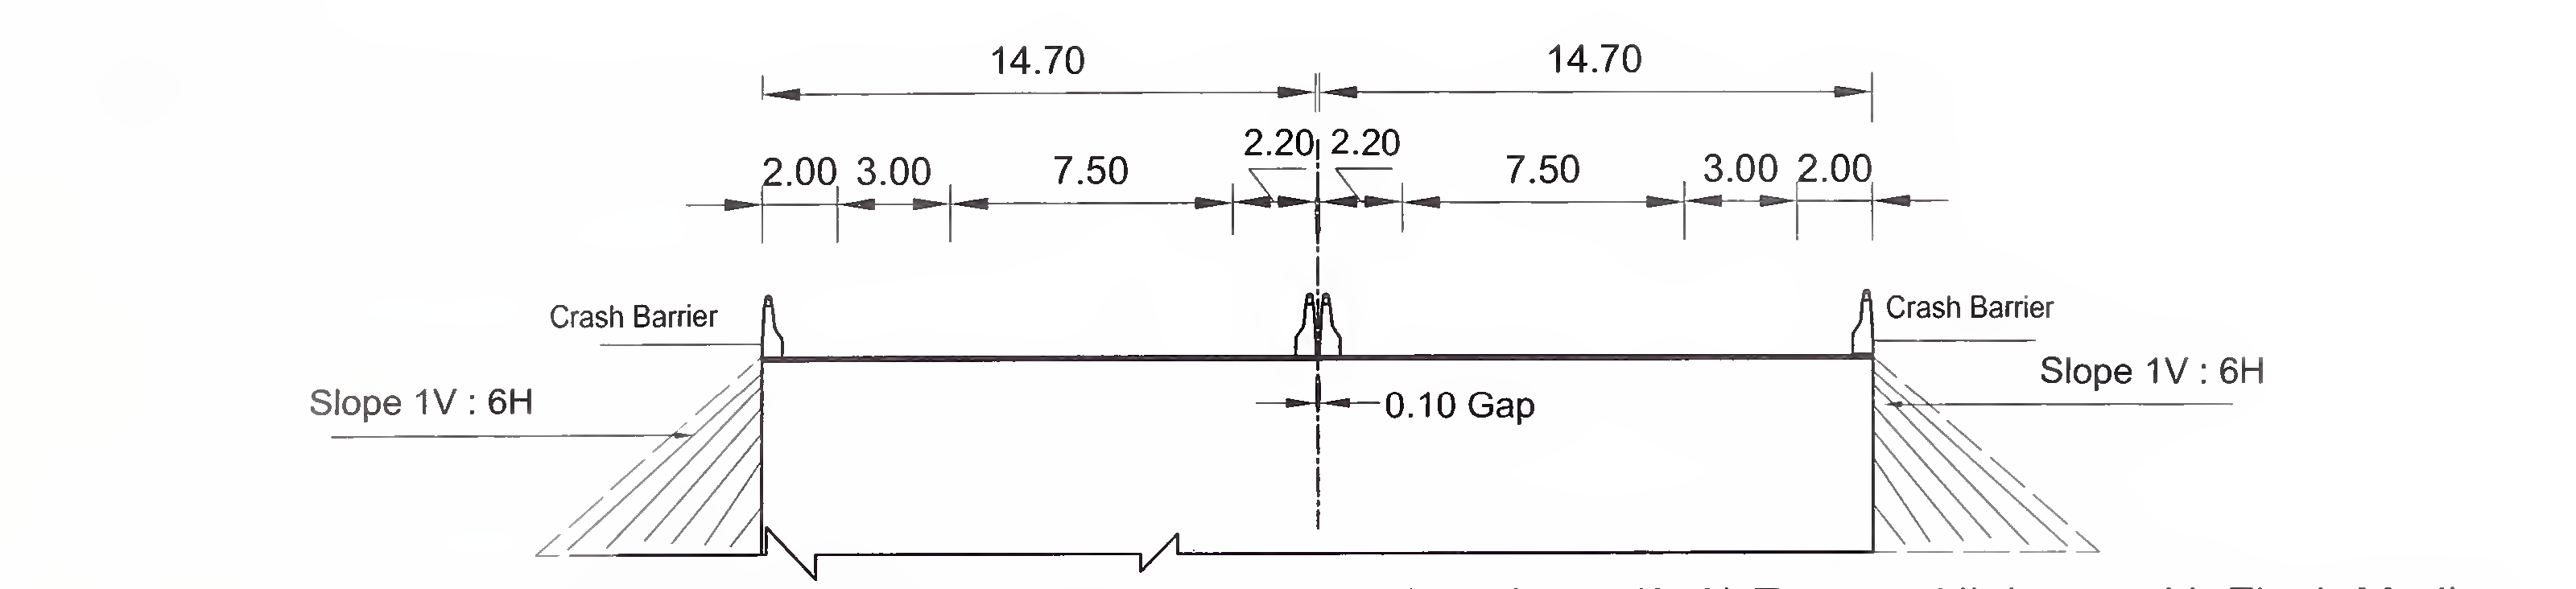 ചിത്രം 6.4 (എ) സ്ലാബിന്റെ സാധാരണ ക്രോസ്-സെക്ഷൻ, 4-ലെയ്നിനുള്ള ബോക്സ് തരം കൽ‌വർട്ട് (2 × 2) ഫ്ലഷ് മീഡിയൻ ഉള്ള എക്സ്പ്രസ് ഹൈവേ